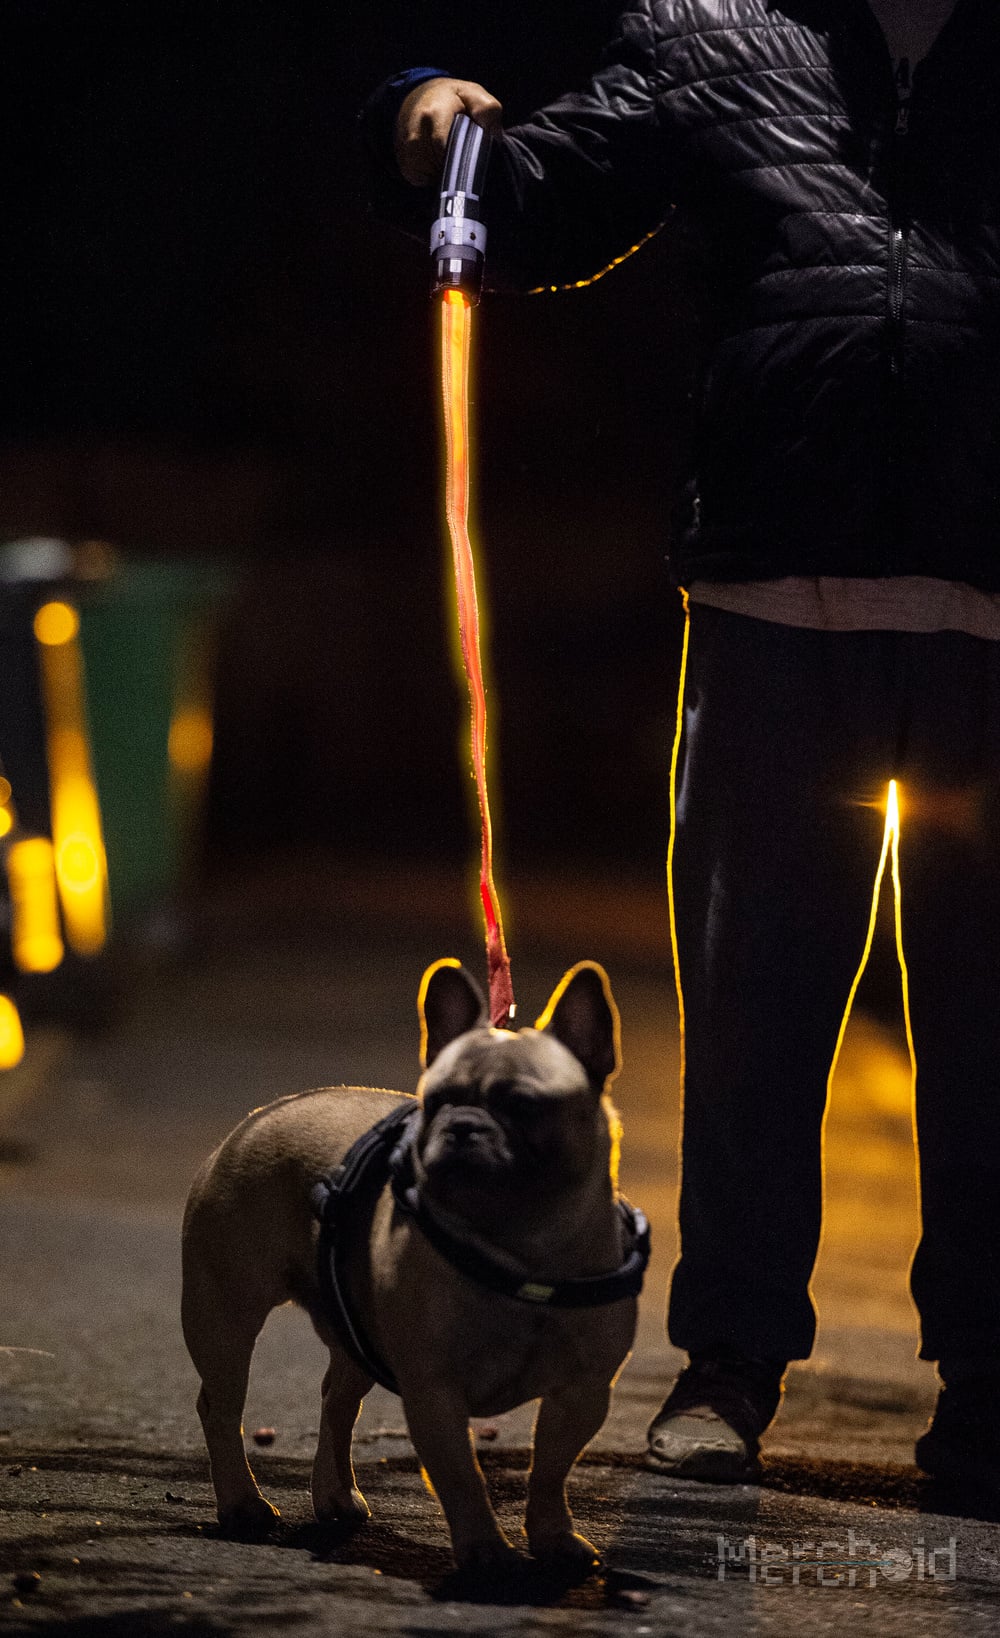 lightsaber dog lead